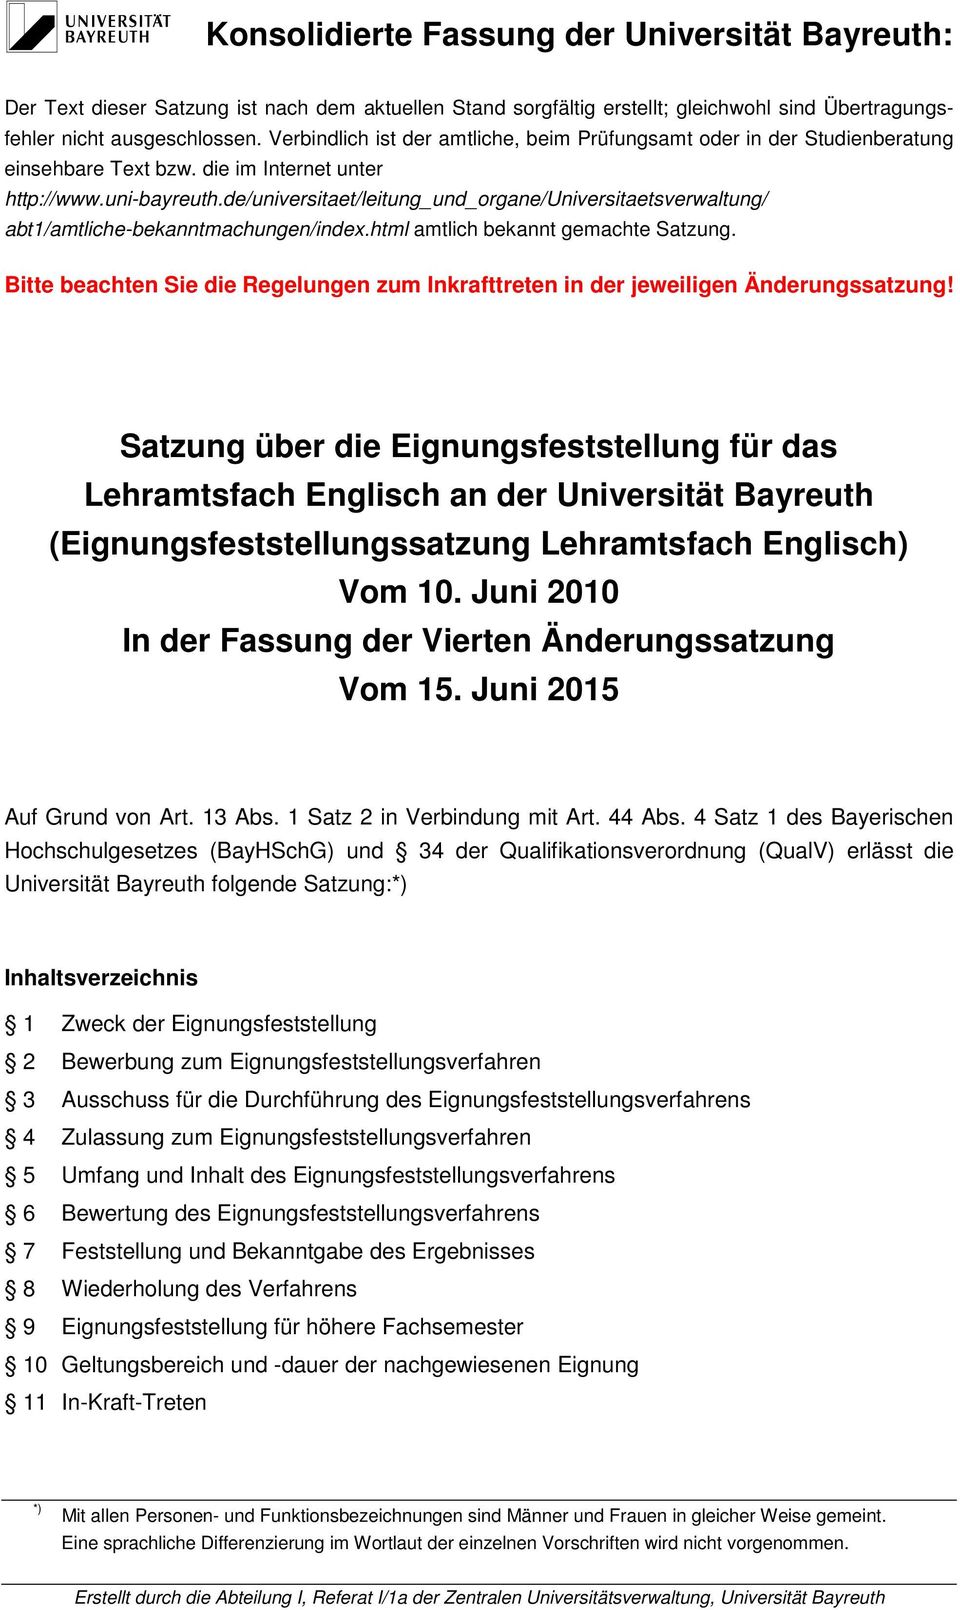 de/universitaet/leitung_und_organe/universitaetsverwaltung/ abt1/amtliche-bekanntmachungen/index.html amtlich bekannt gemachte Satzung.